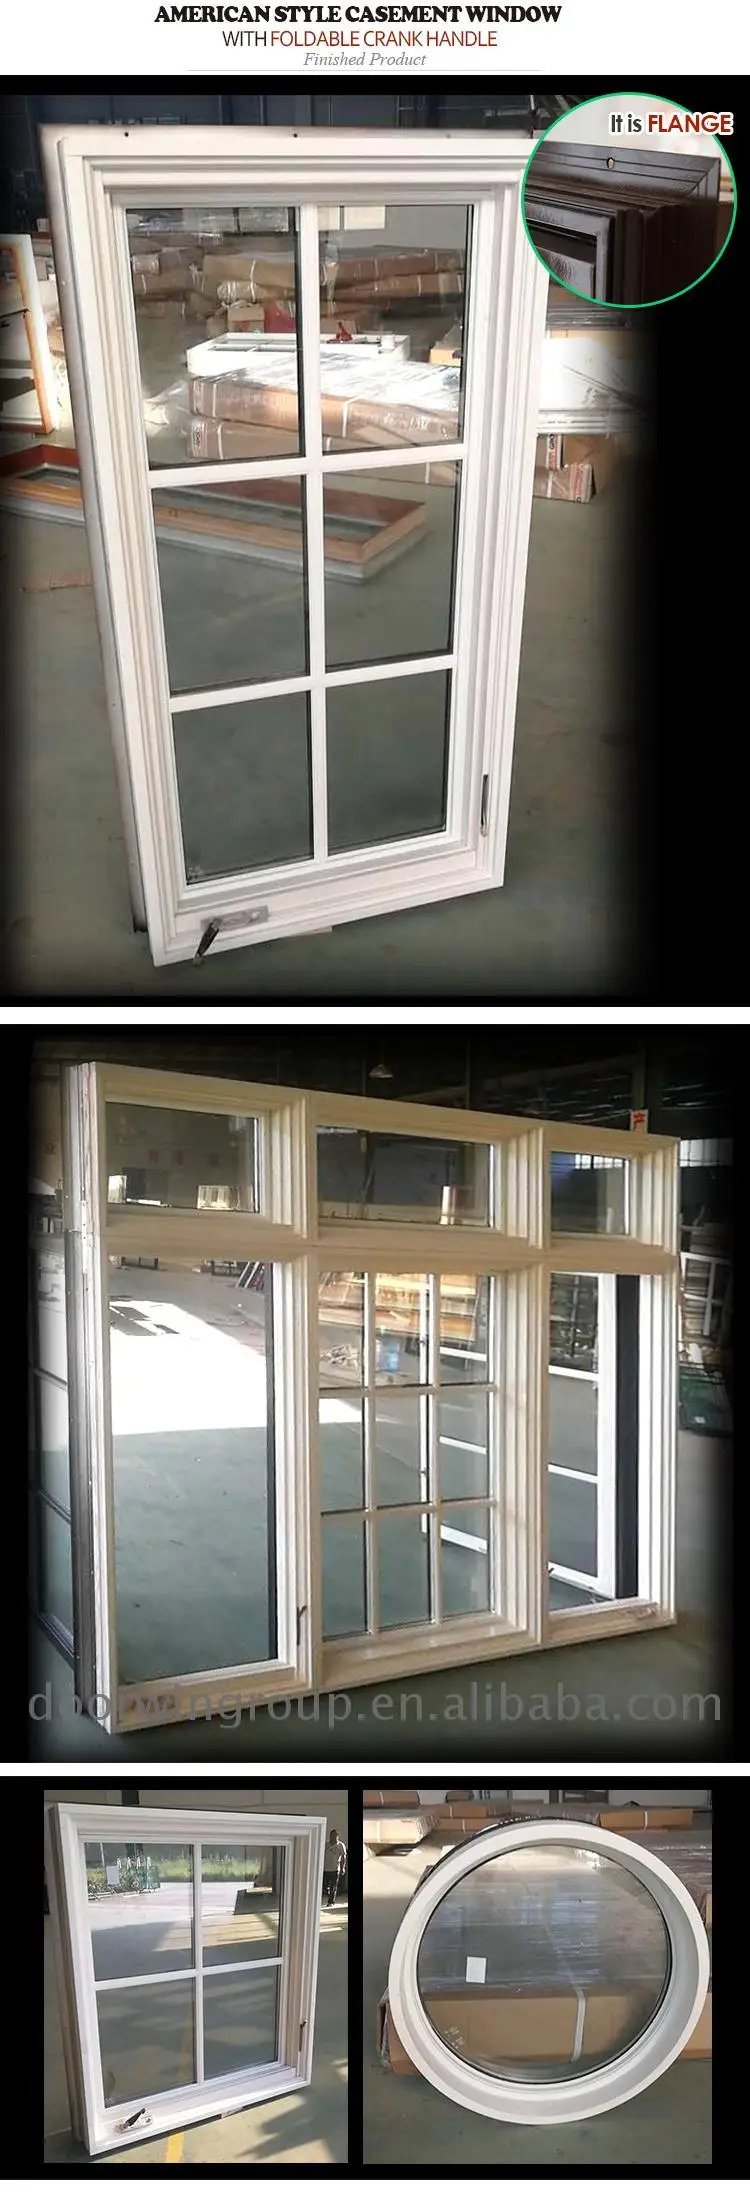 20 inch porthole window